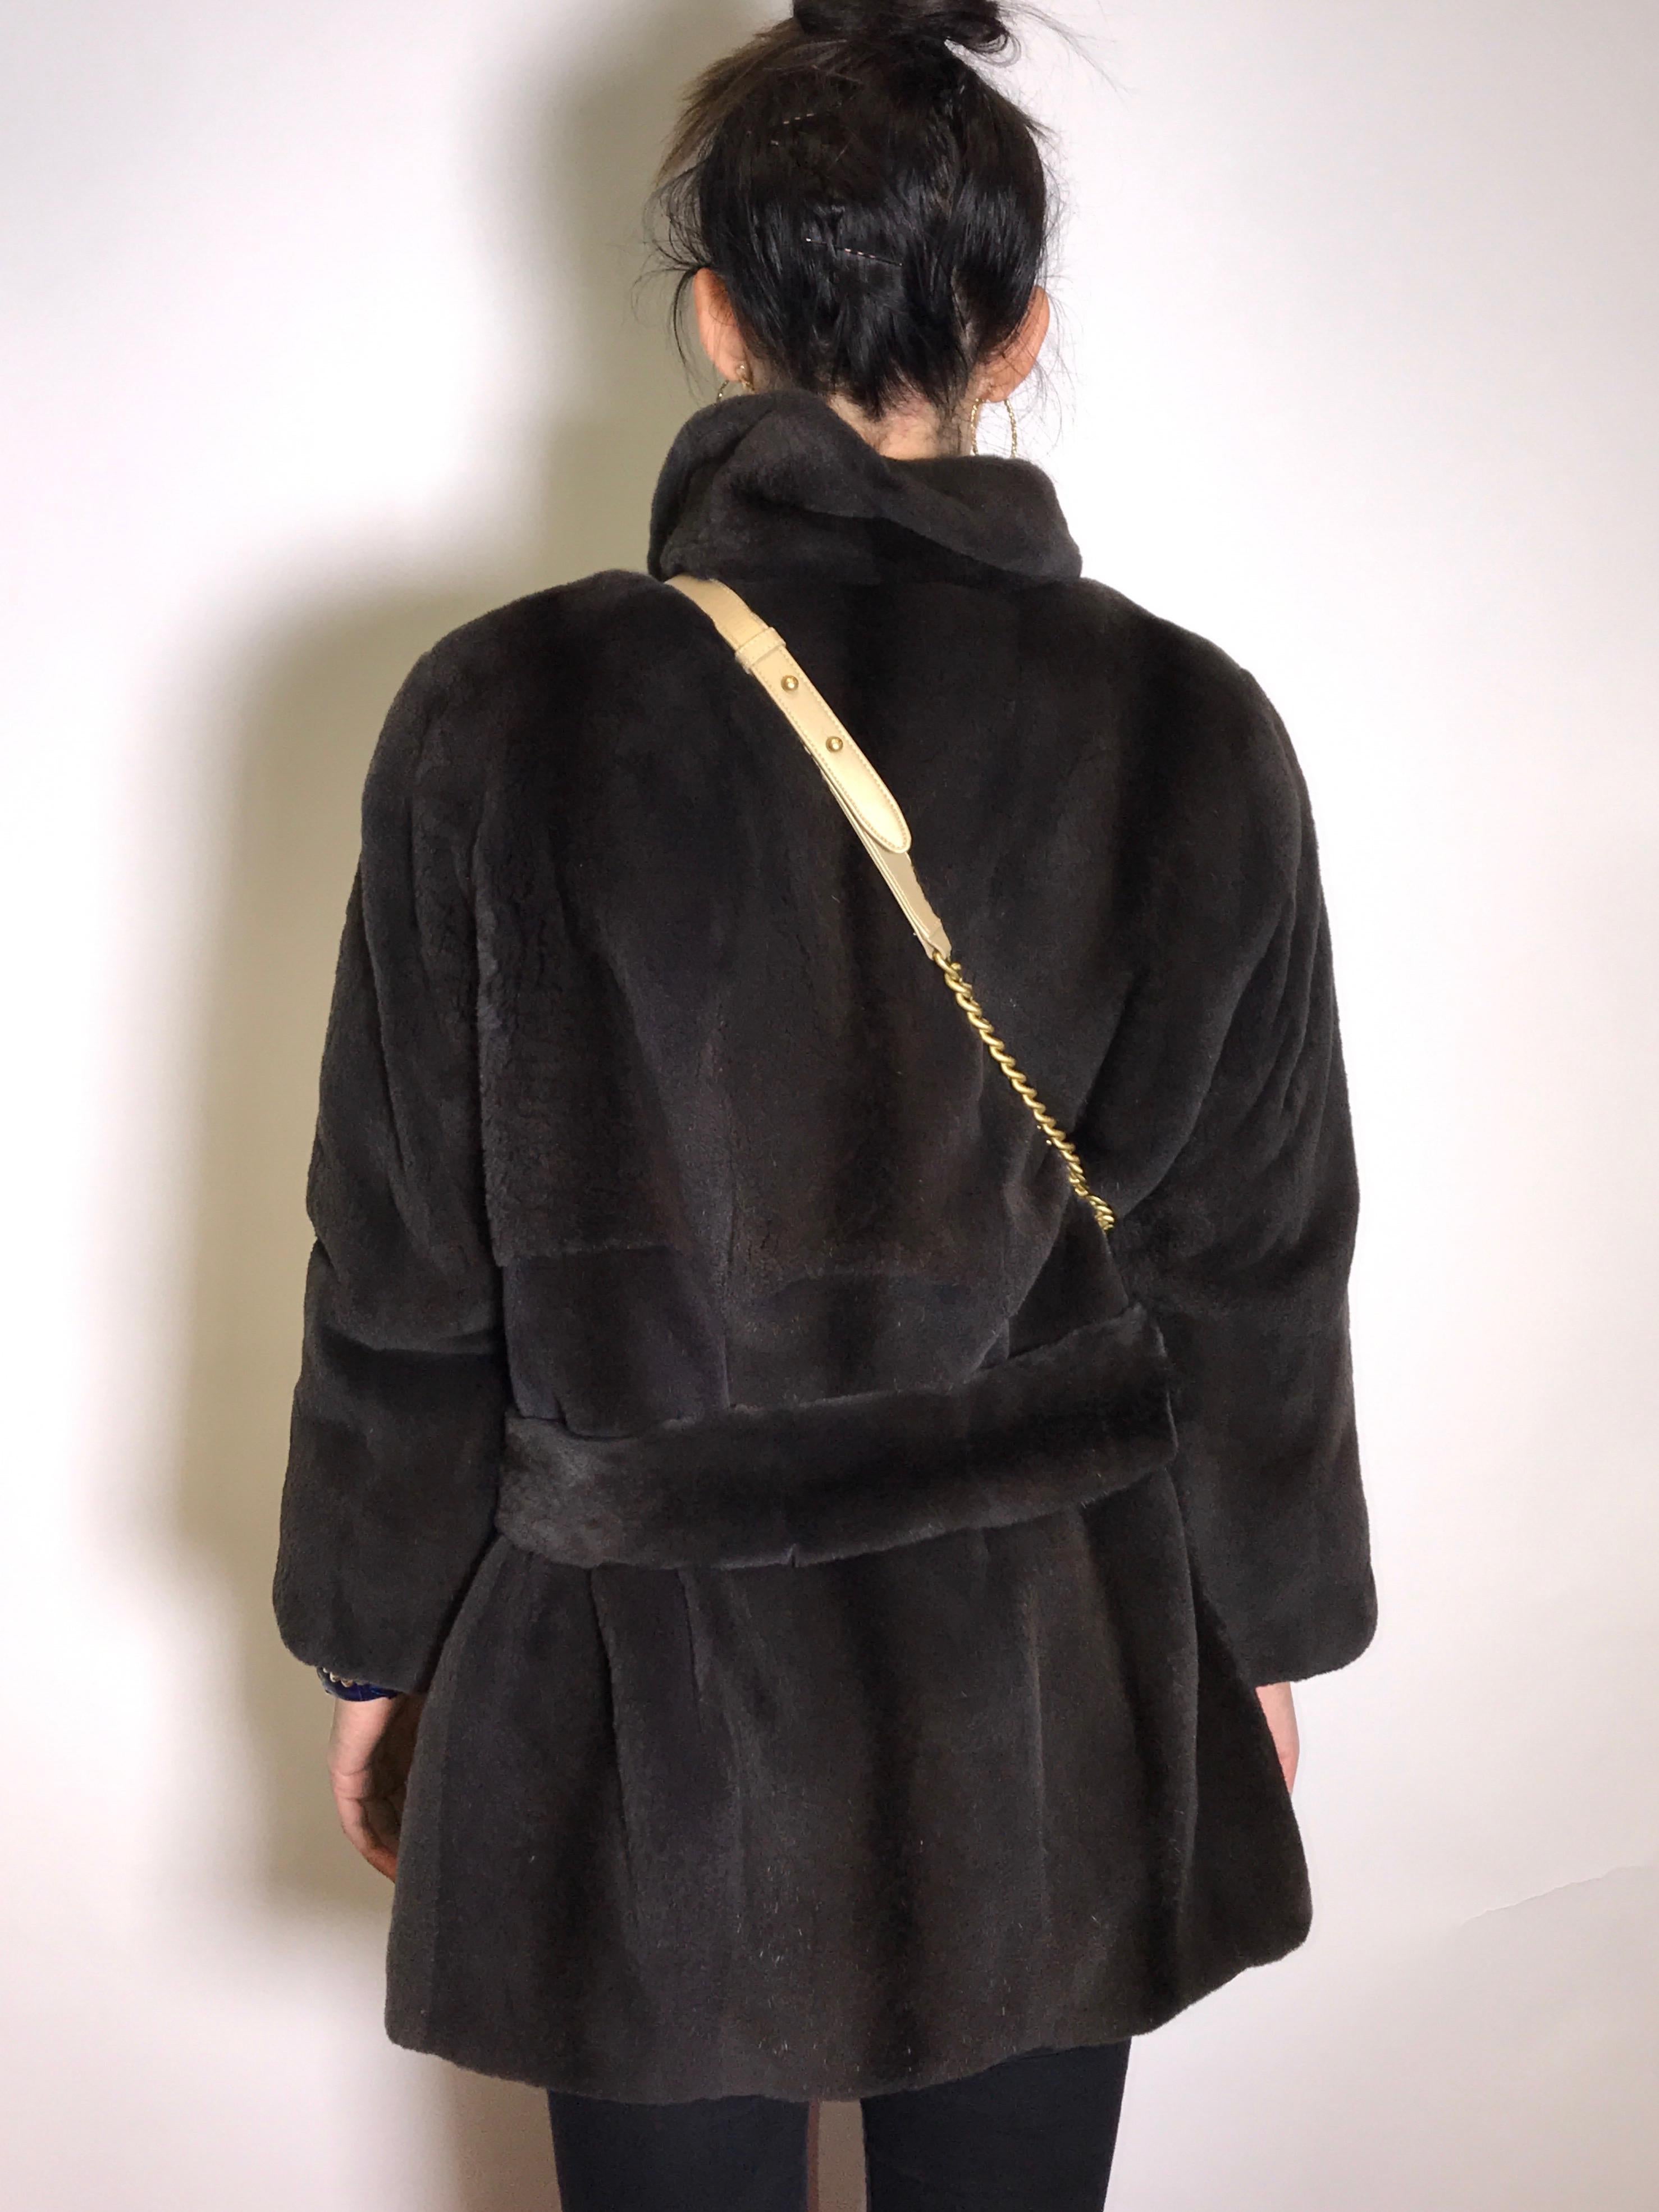 Sheared velvet silk mink fur jacket by FECHNER. Black/dark gray. (6) For Sale 1